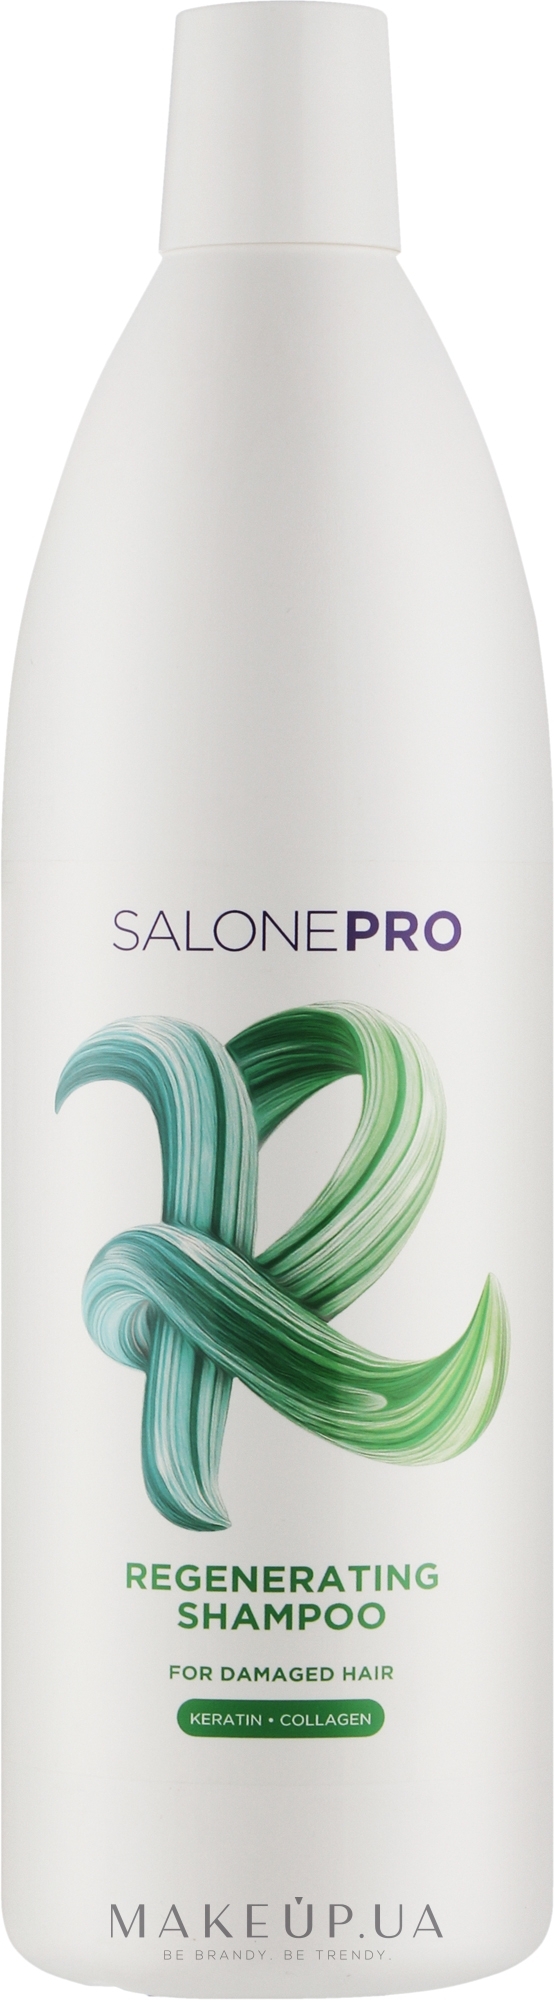 Відновлювальний шампунь для пошкодженого волосся - Unic Salone Pro Regenerating Shampoo — фото 1000ml